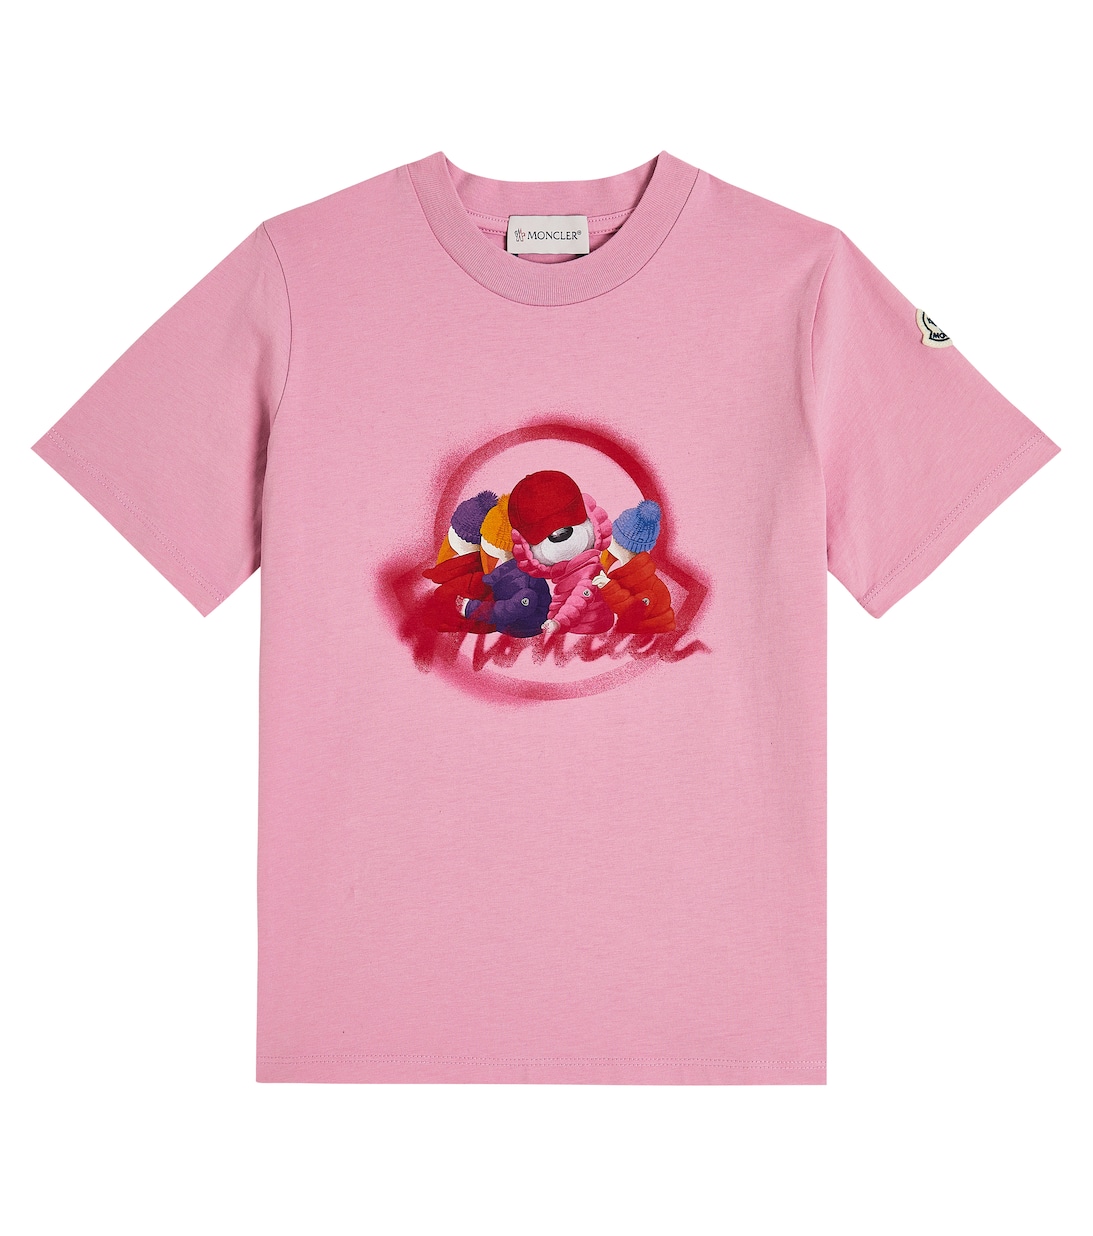 Хлопковая футболка с логотипом Moncler Enfant, розовый